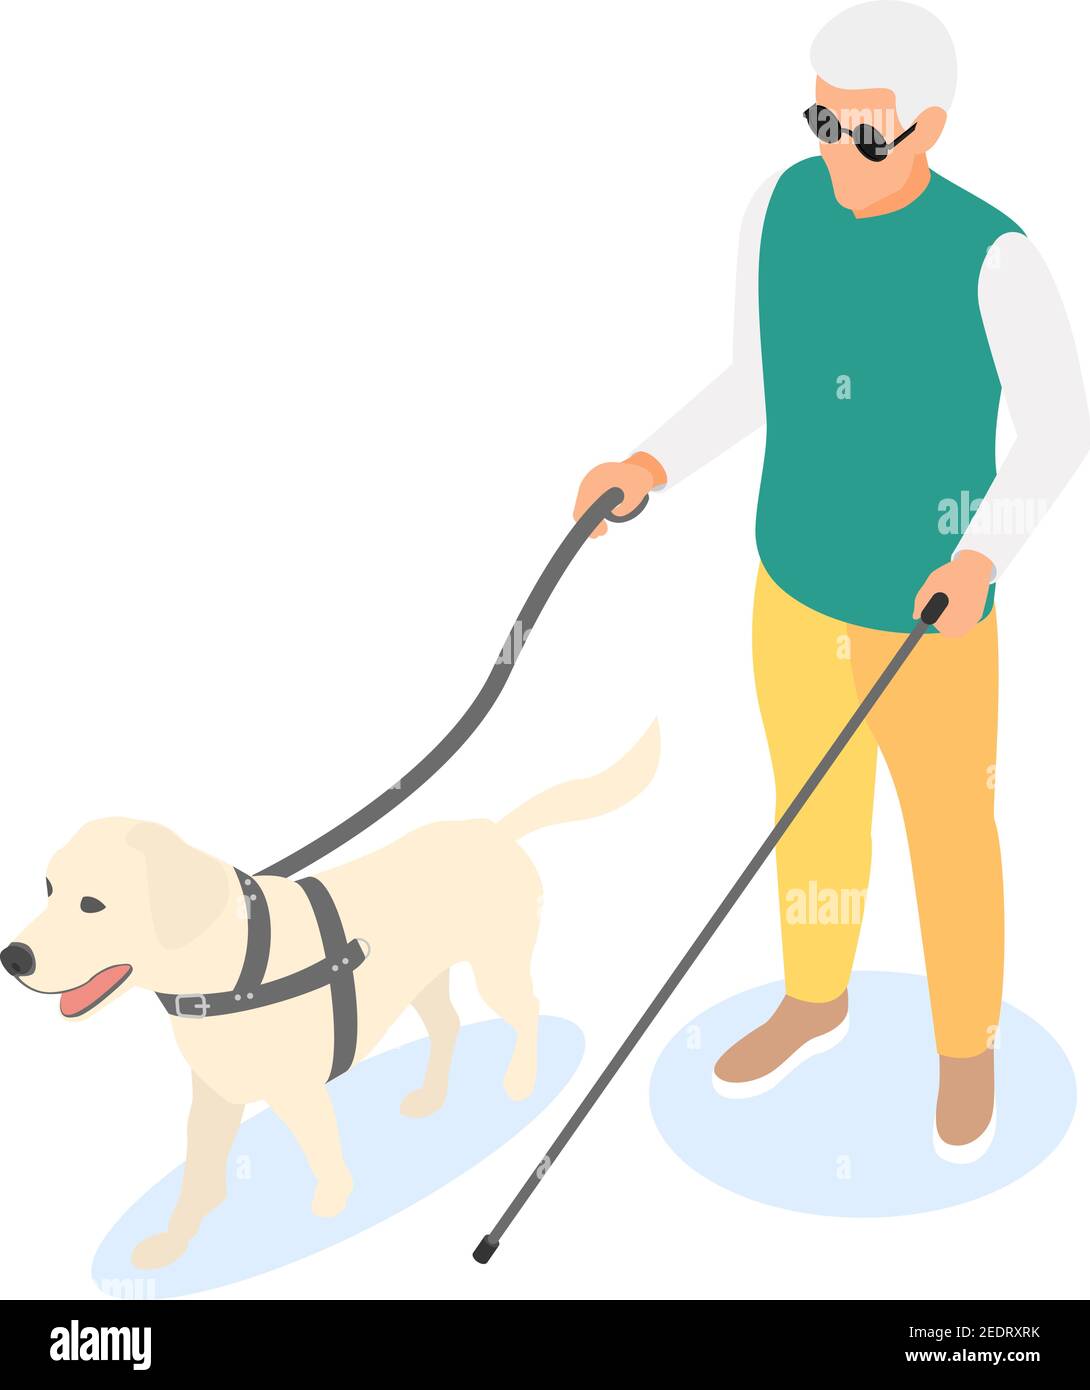 Blinder älterer Mann mit Gehstock und Blindenhund isoliert auf weißem Hintergrund. Isometrische Darstellung des flachen Vektorgrafikes. Stock Vektor